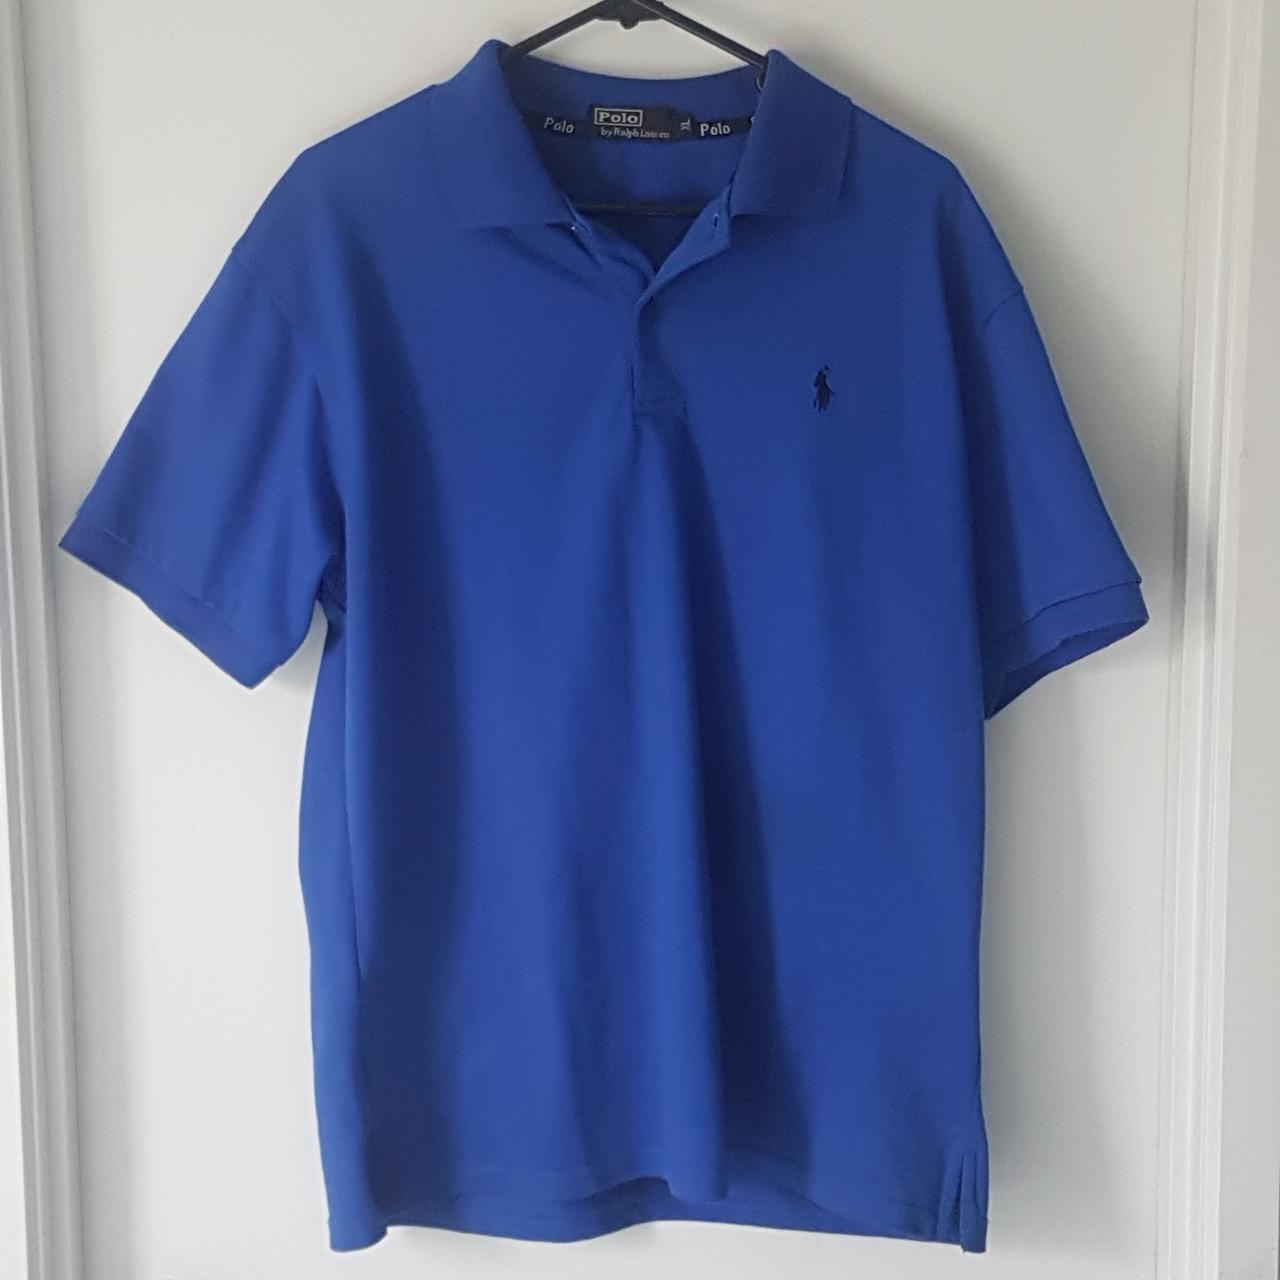 Ralph Lauren XL blue polo shirt good quality... - Depop